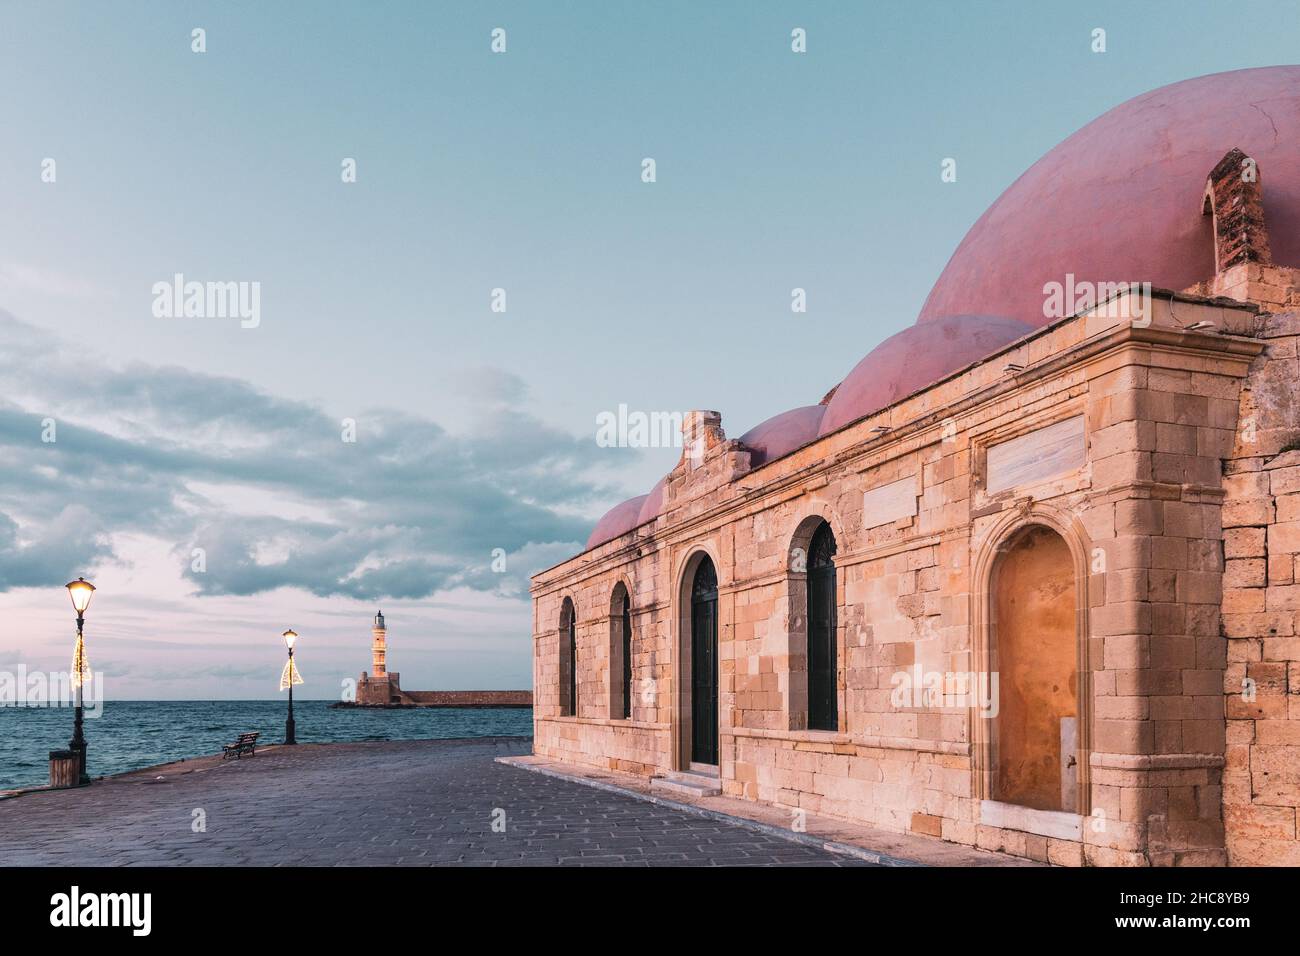 La moschea di Chania Hassan Pascha e il faro al sole al porto veneziano - Isola di Creta, Grecia Foto Stock